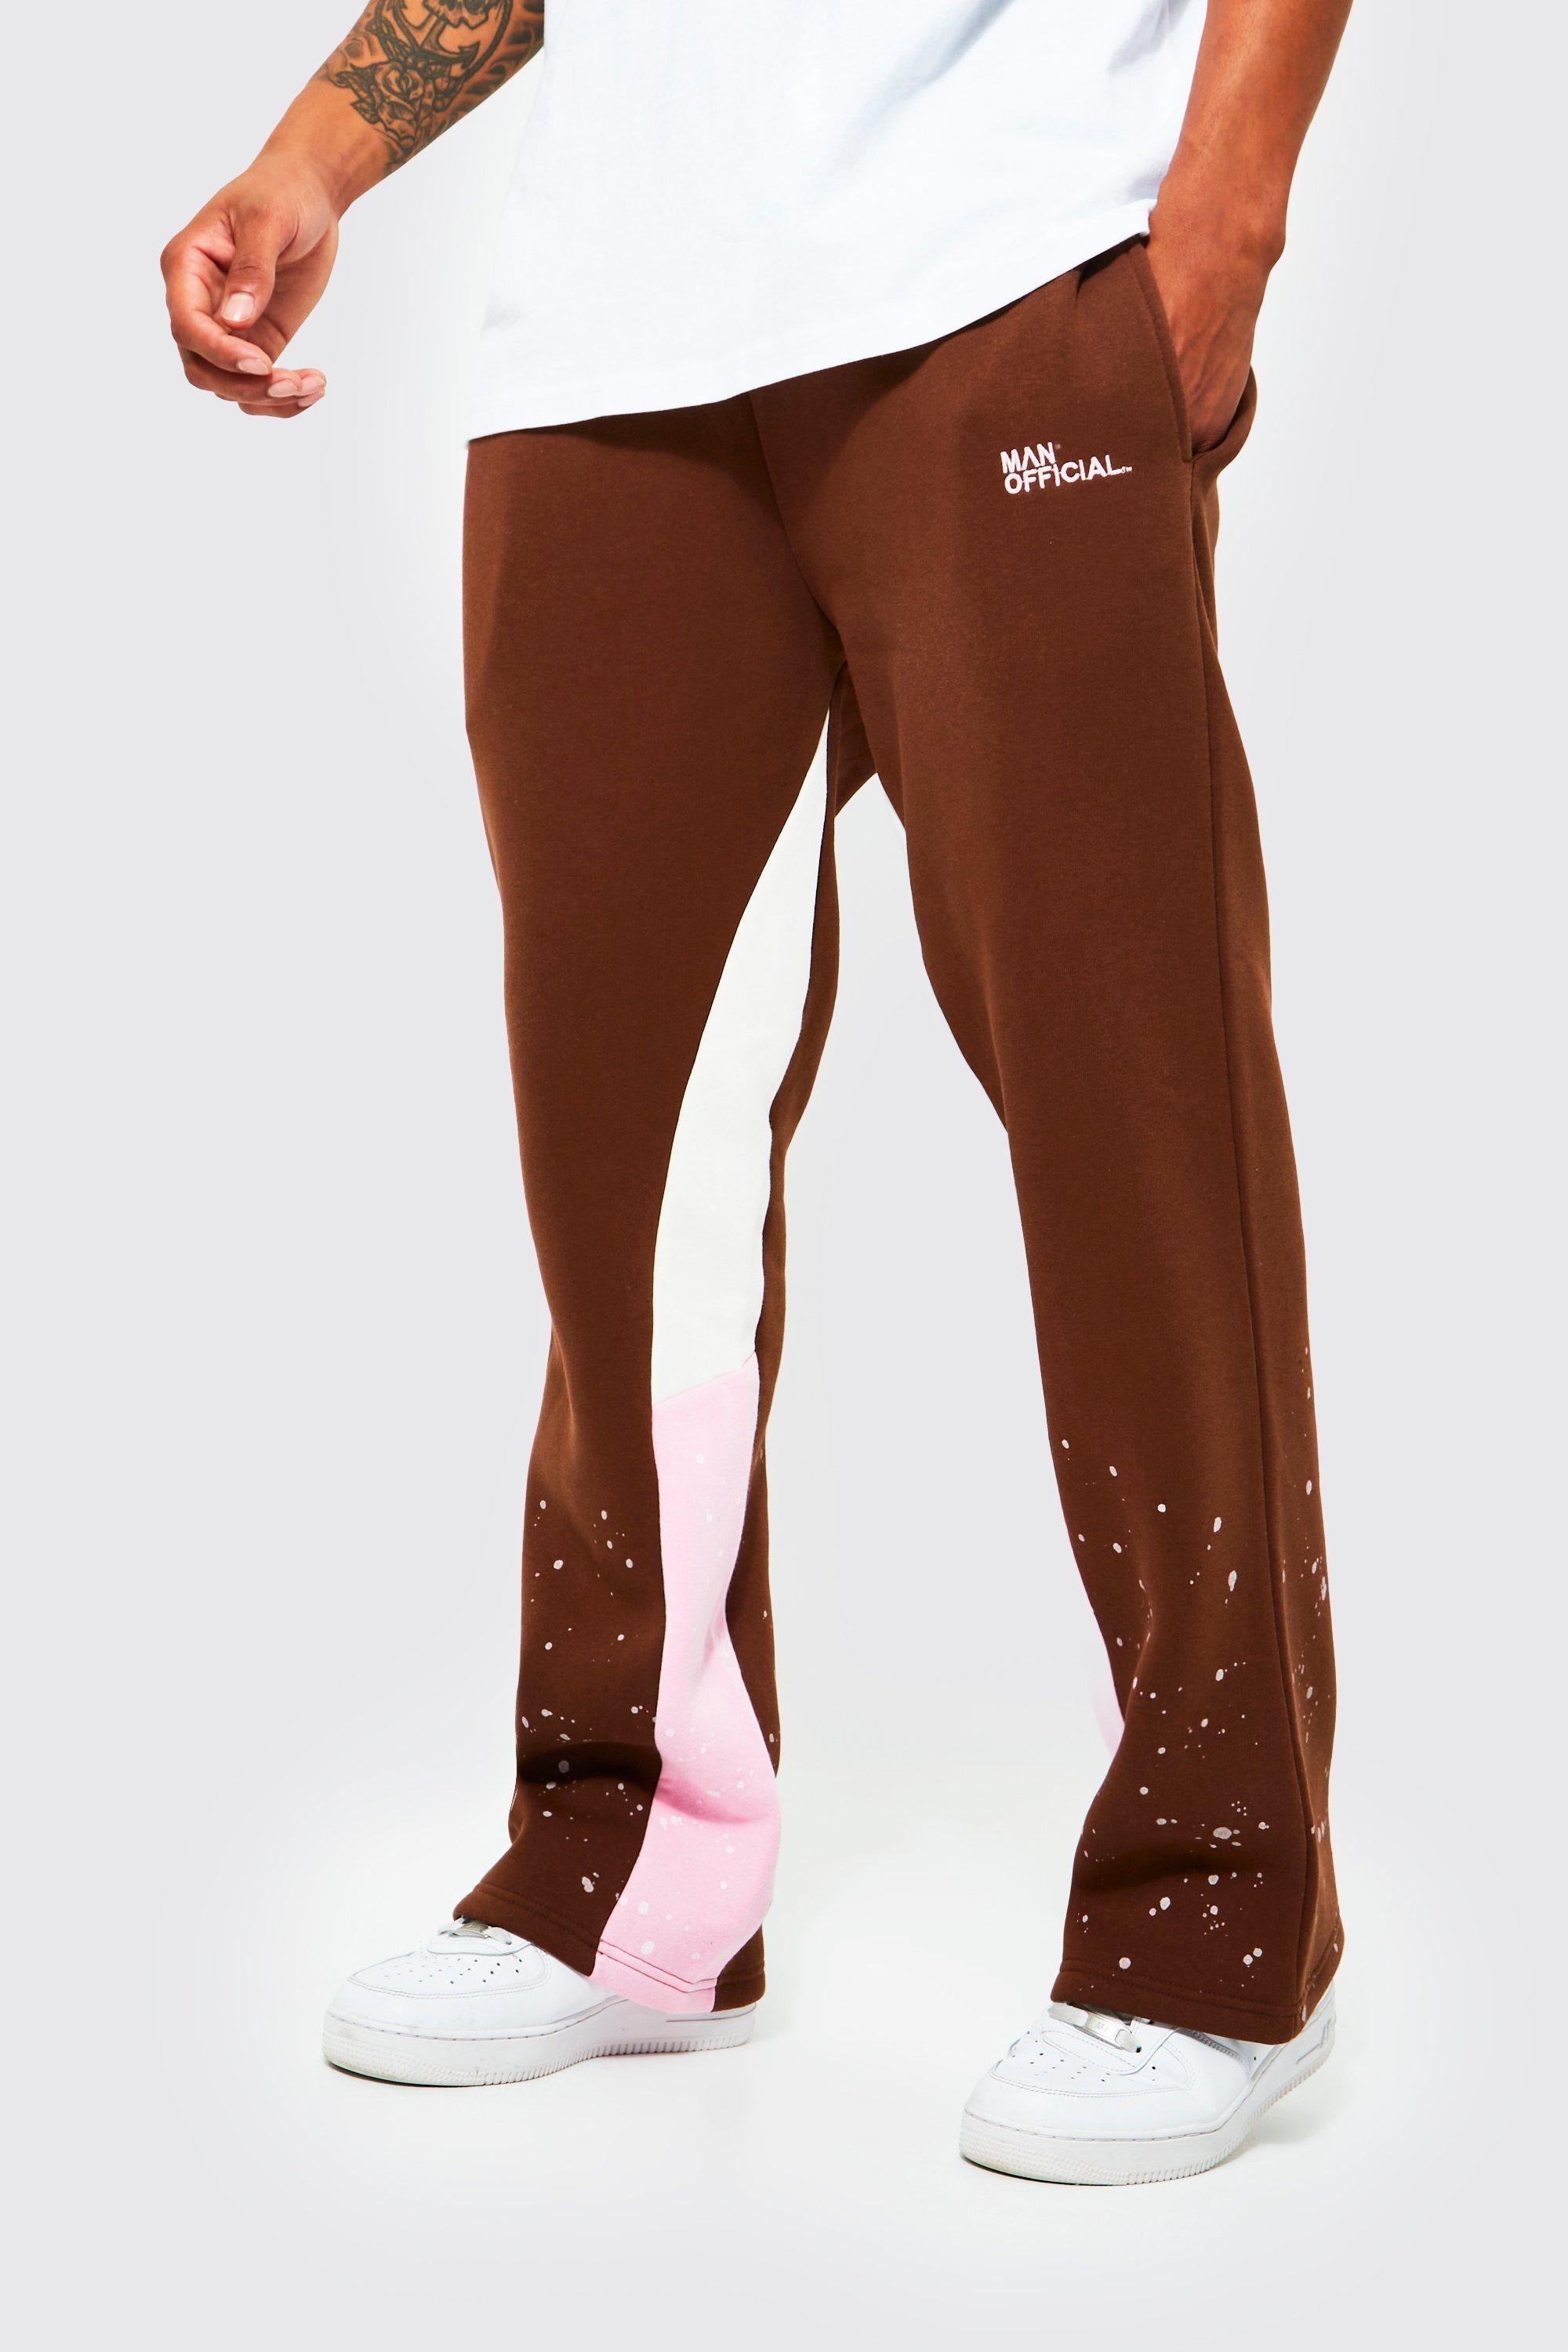 Pantaloni tuta Regular Fit con inserti e schizzi di colore, Brown